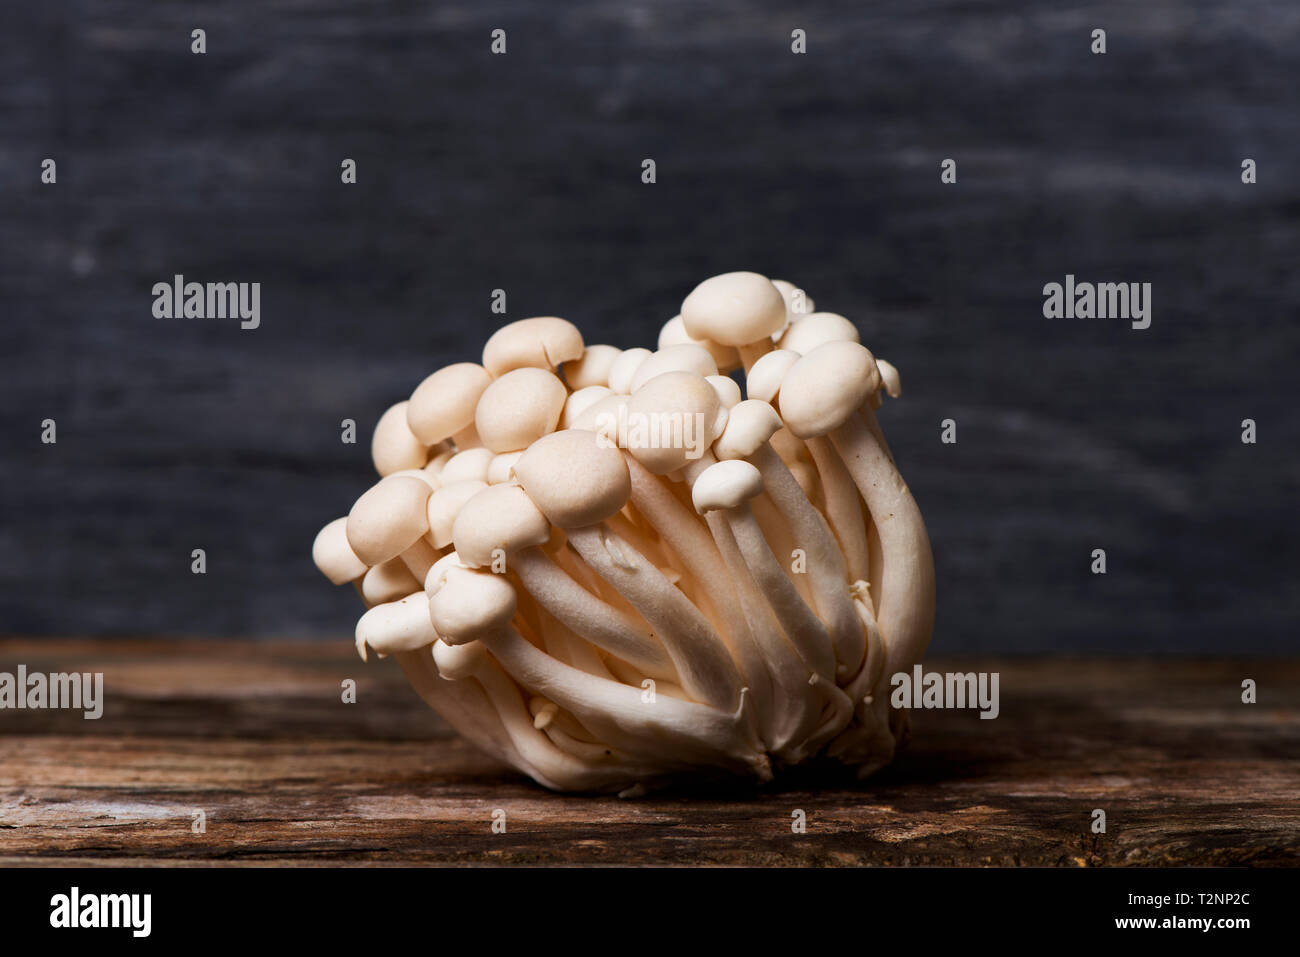 Auch die Nahaufnahme eines Bündels von Raw japanische bunapi - shimeji Pilze, wie Buche oder weiß Greifer Pilze bekannt, auf einem rustikalen Holztisch Stockfoto